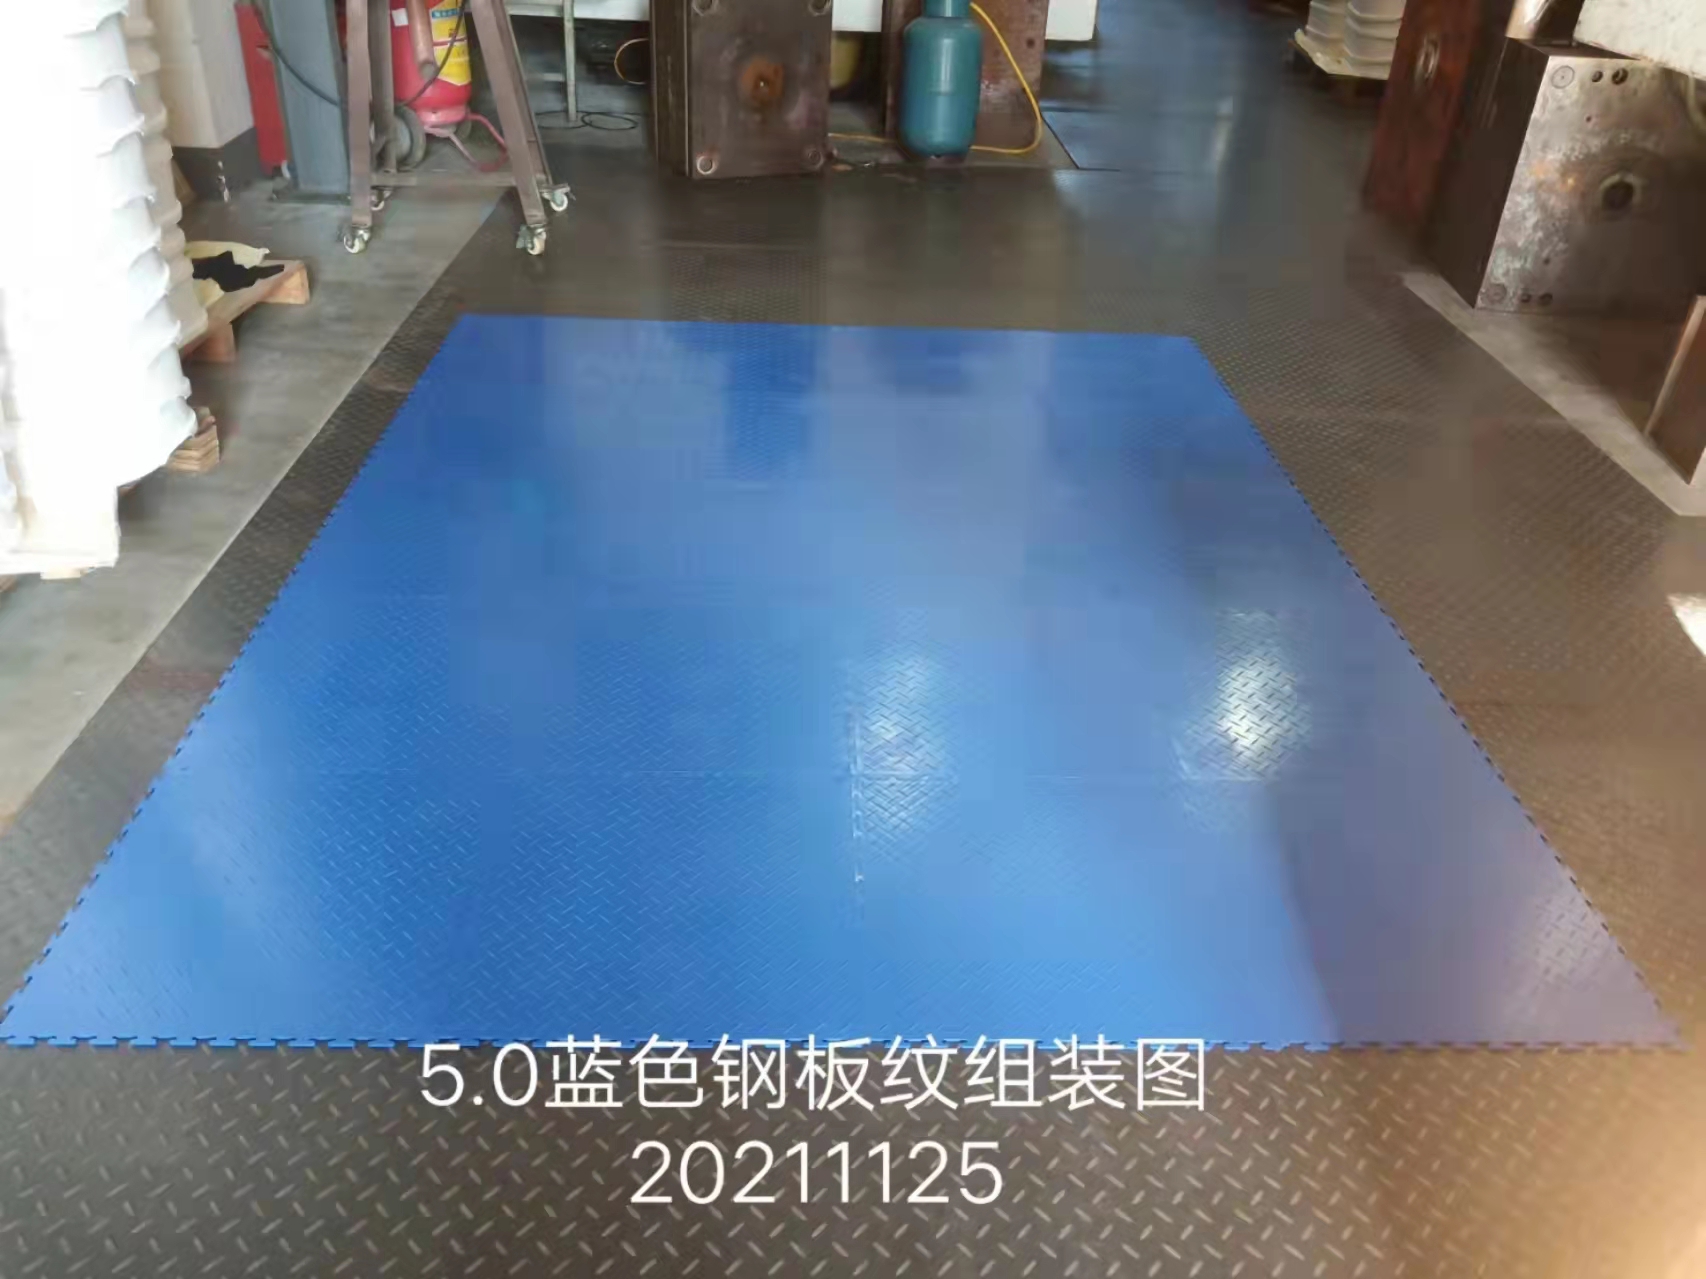 中山5.0灰色皮纹地板批发、报价、销售、公司【东莞市顺泰塑胶制品有限公司】